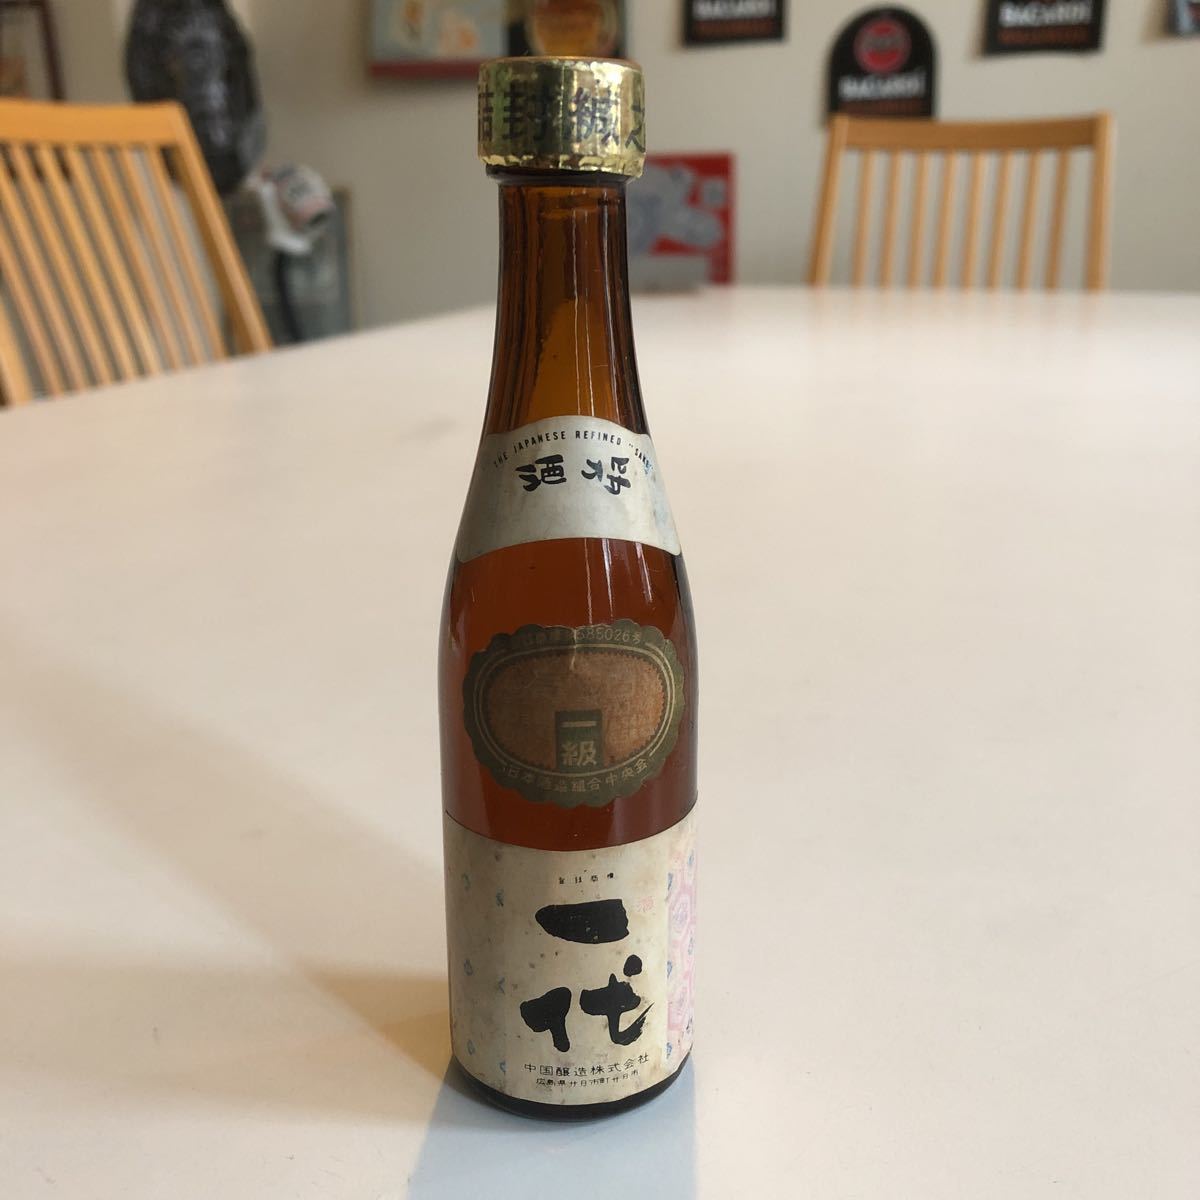  японкое рисовое вино (sake) один плата China . структура Mini бутылка нераспечатанный бутылка старый sake 